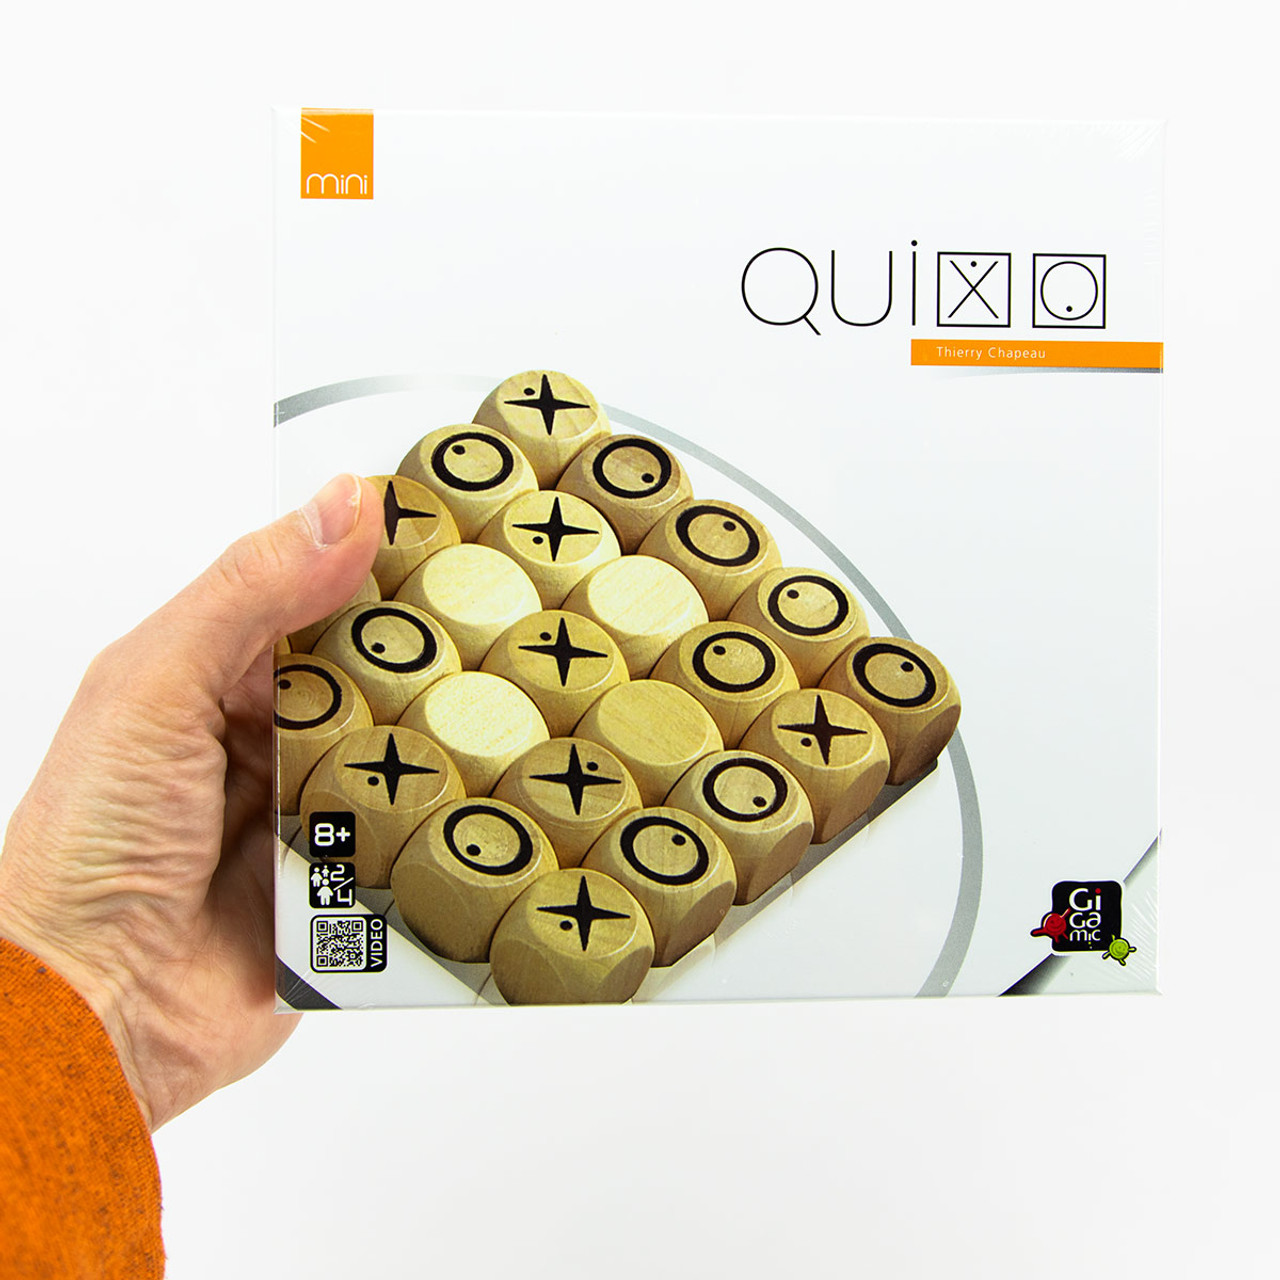 Quantik mini ,boardgame Gigamic